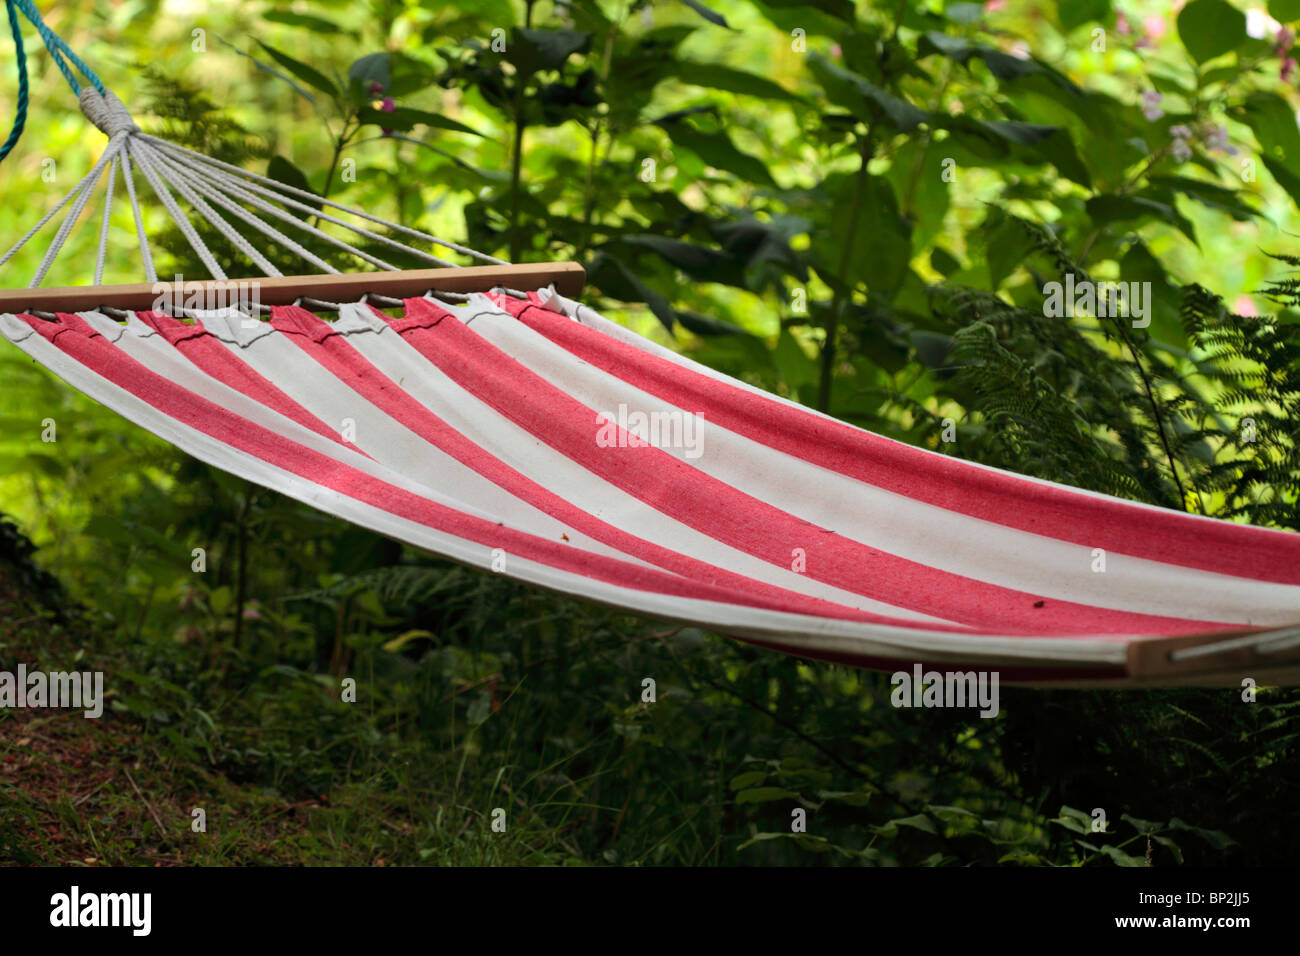 hammock Stock Photo